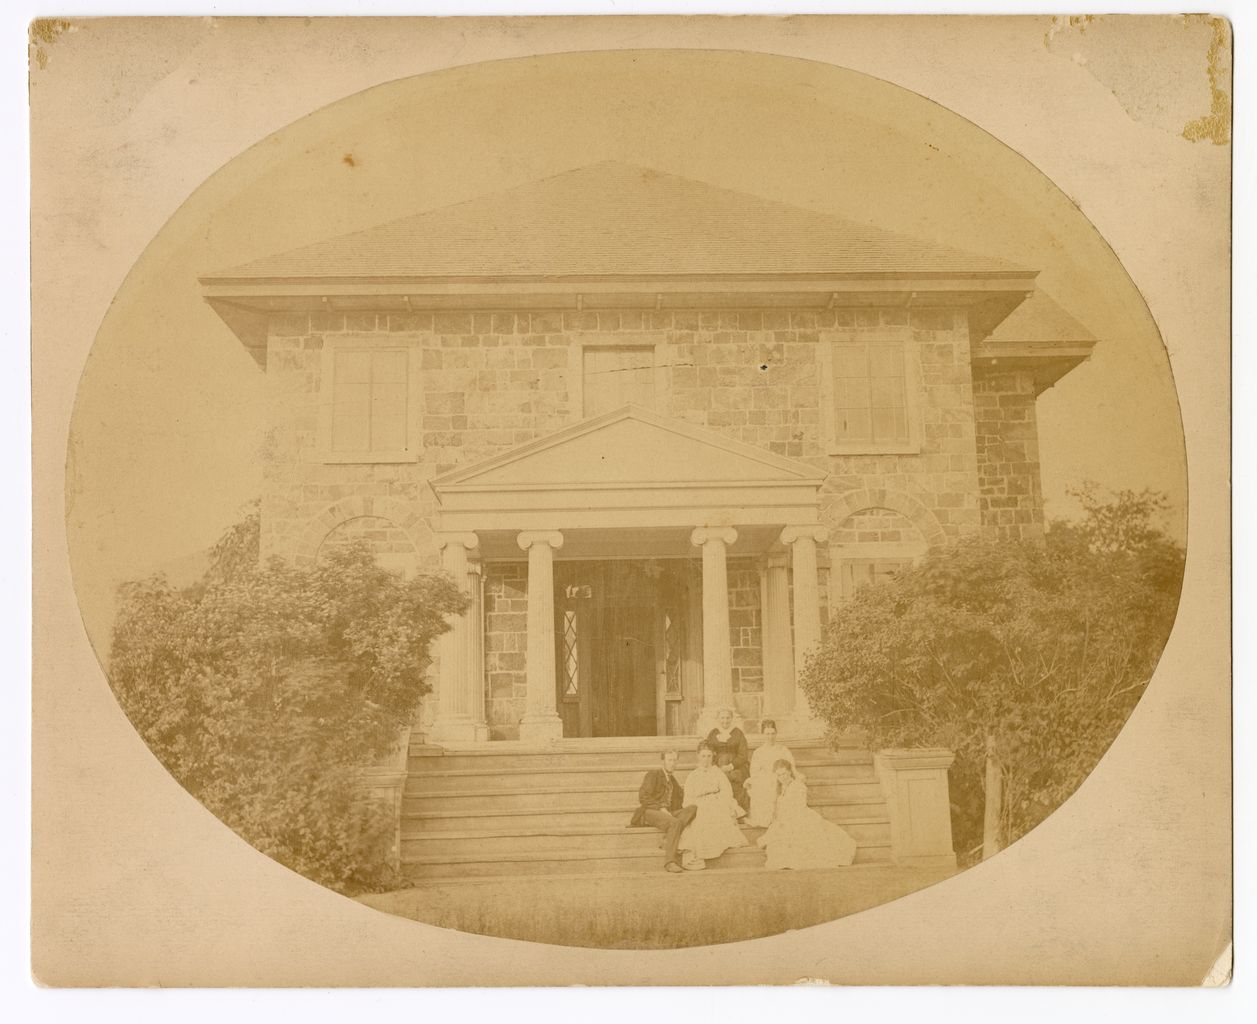 Photographie en noir et blanc de la façade du Grantham Hall, une grande maison en pierre de deux étages avec un porche soutenu par des colonnes. Les membres de la famille posent sur les marches.